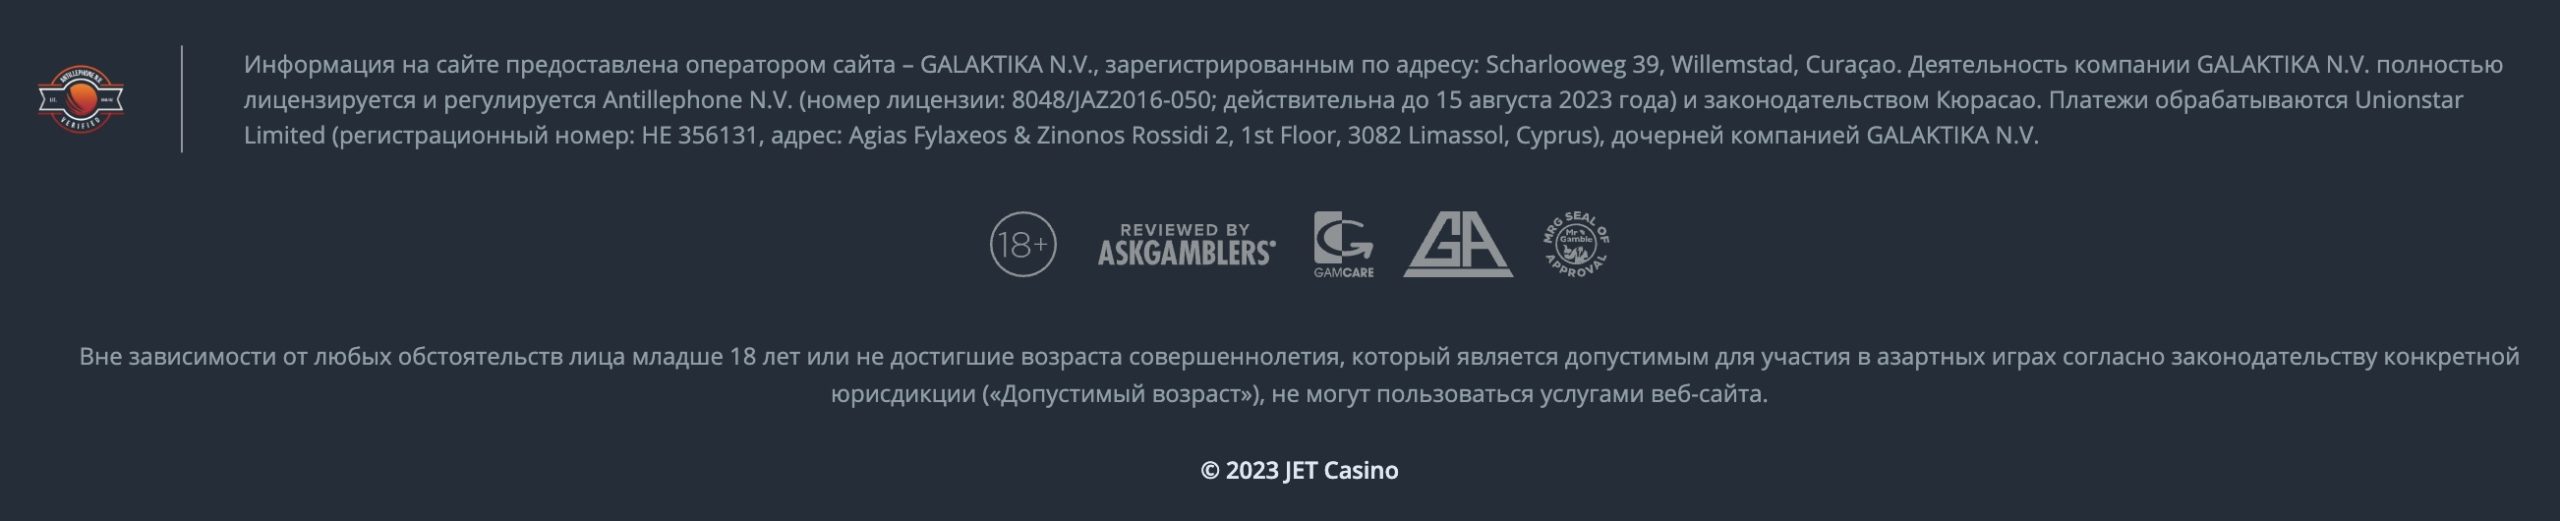 Джет - онлайн казино с рабочим зеркалом сайта